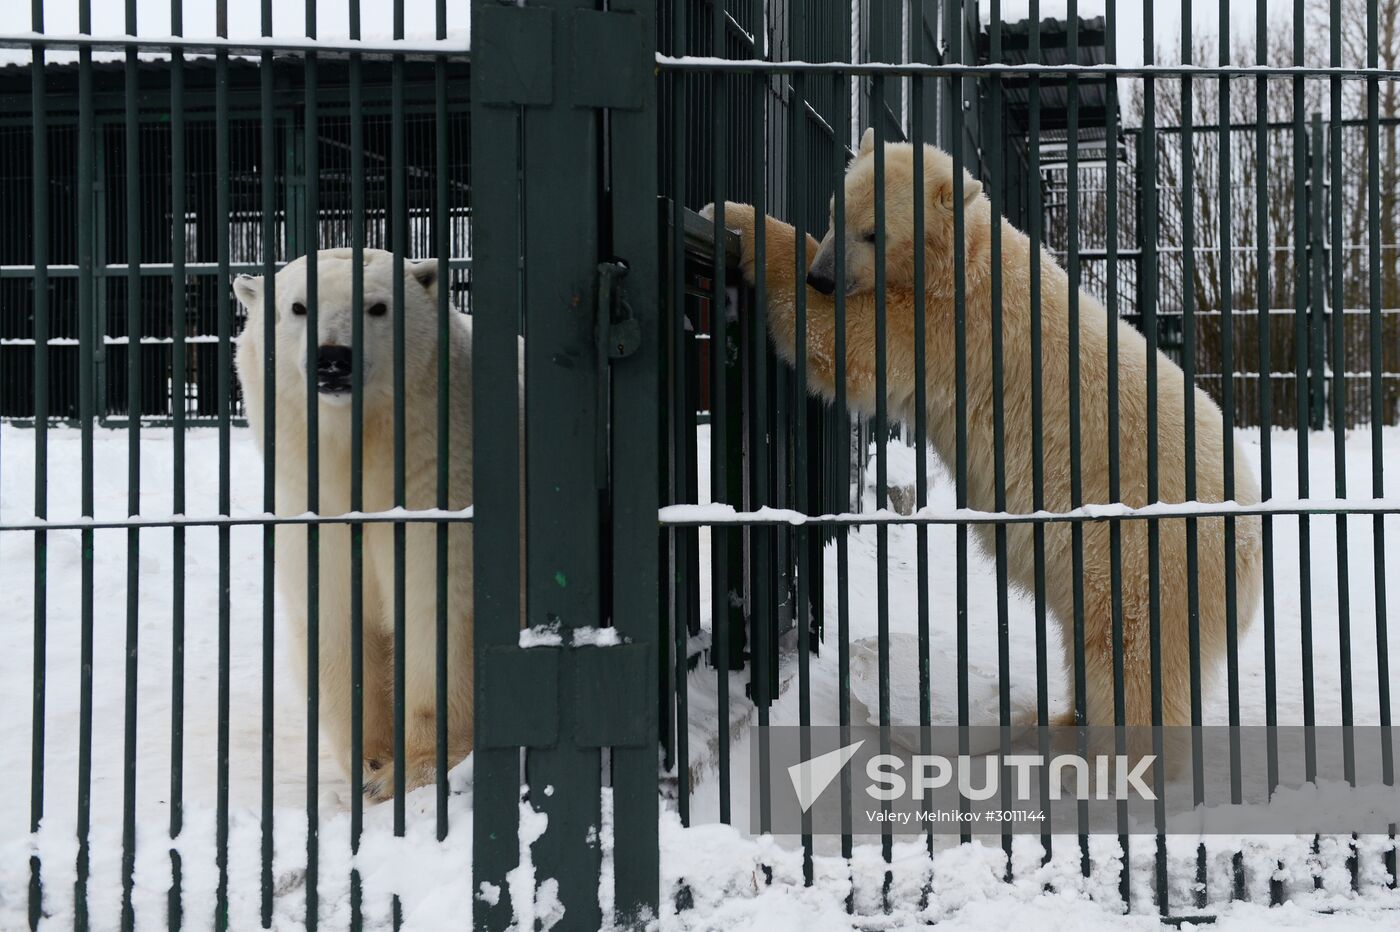 Polar bear cubs at Moscow Zoo nursery